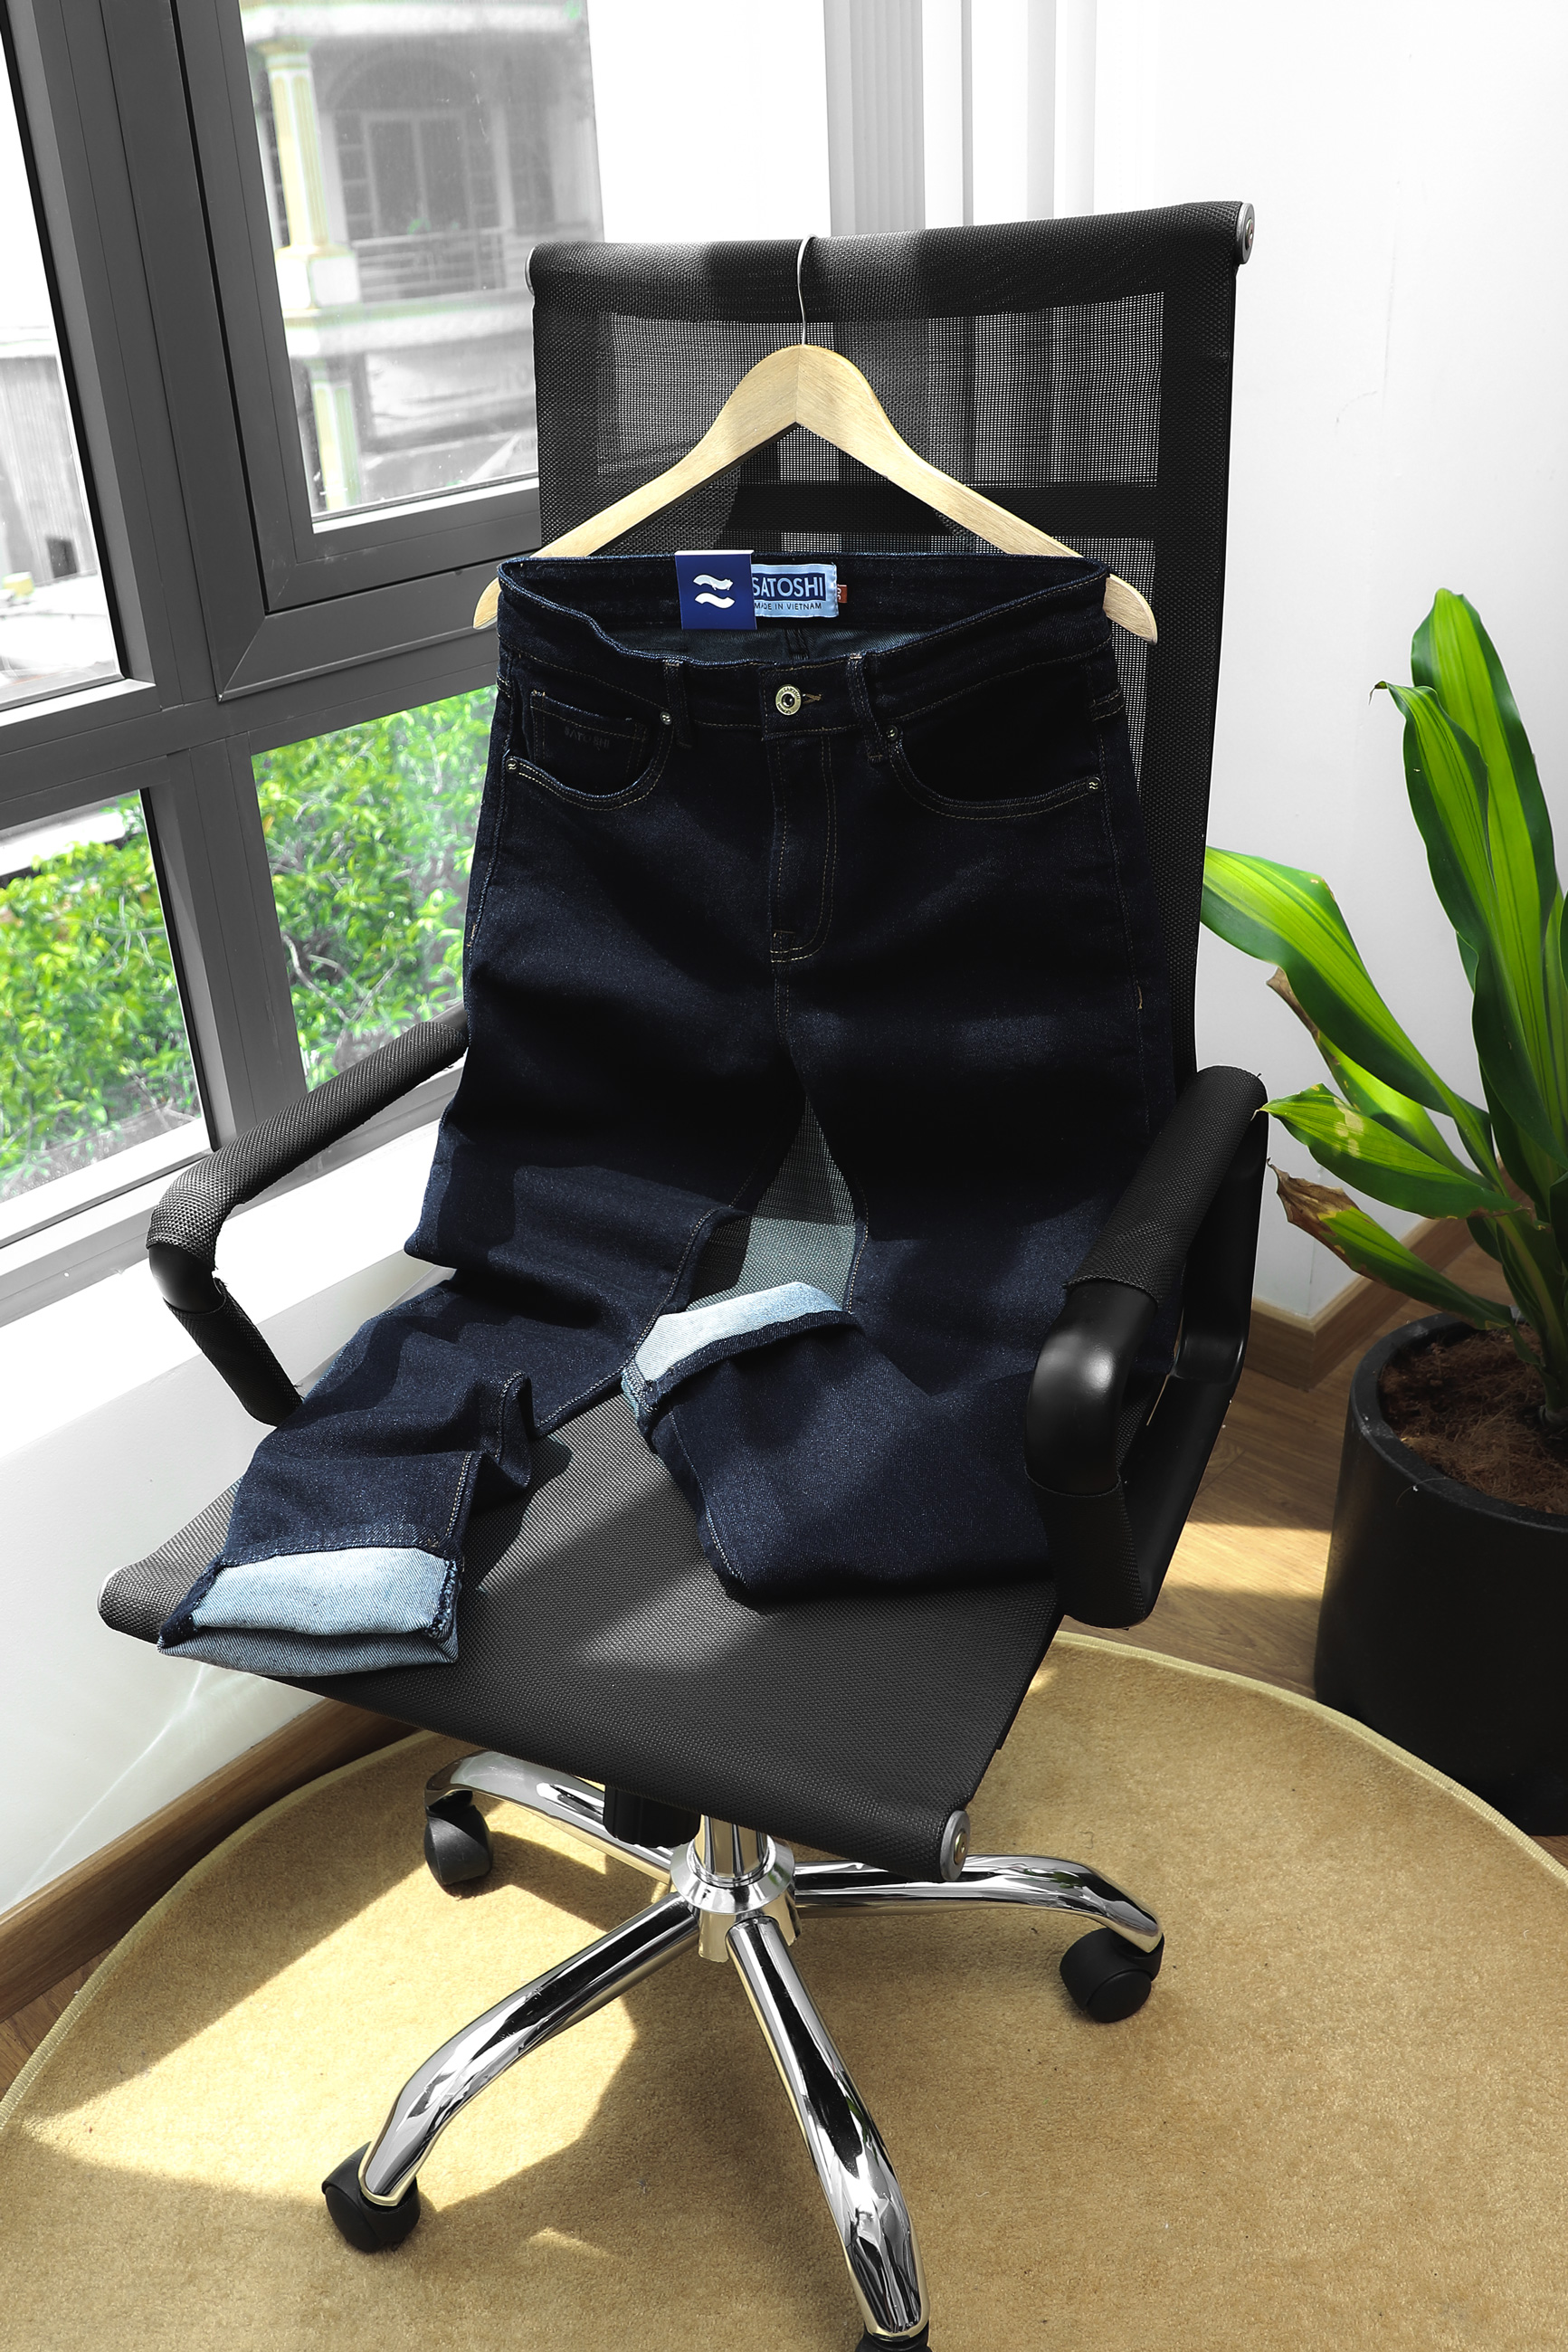 | Satoshi |Quần Jean Nam SATOSHI SAQJ65 form slimfit ống ôm vừa, chất jean co dãn mặc thoải mái